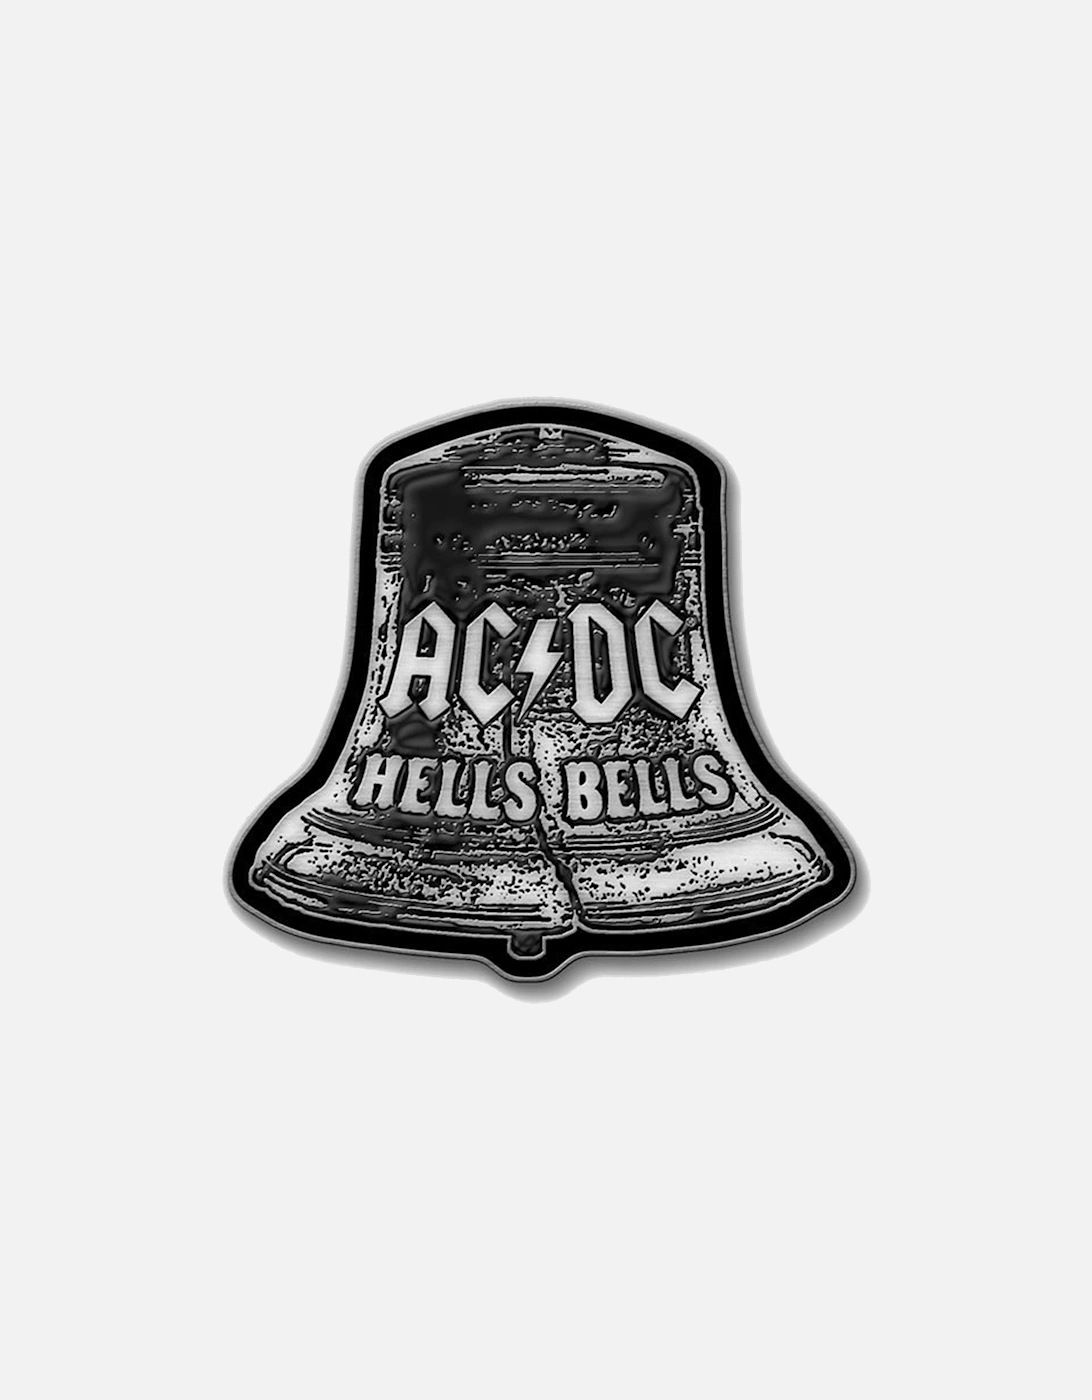 Hells Bells Enamel Badge, 2 of 1